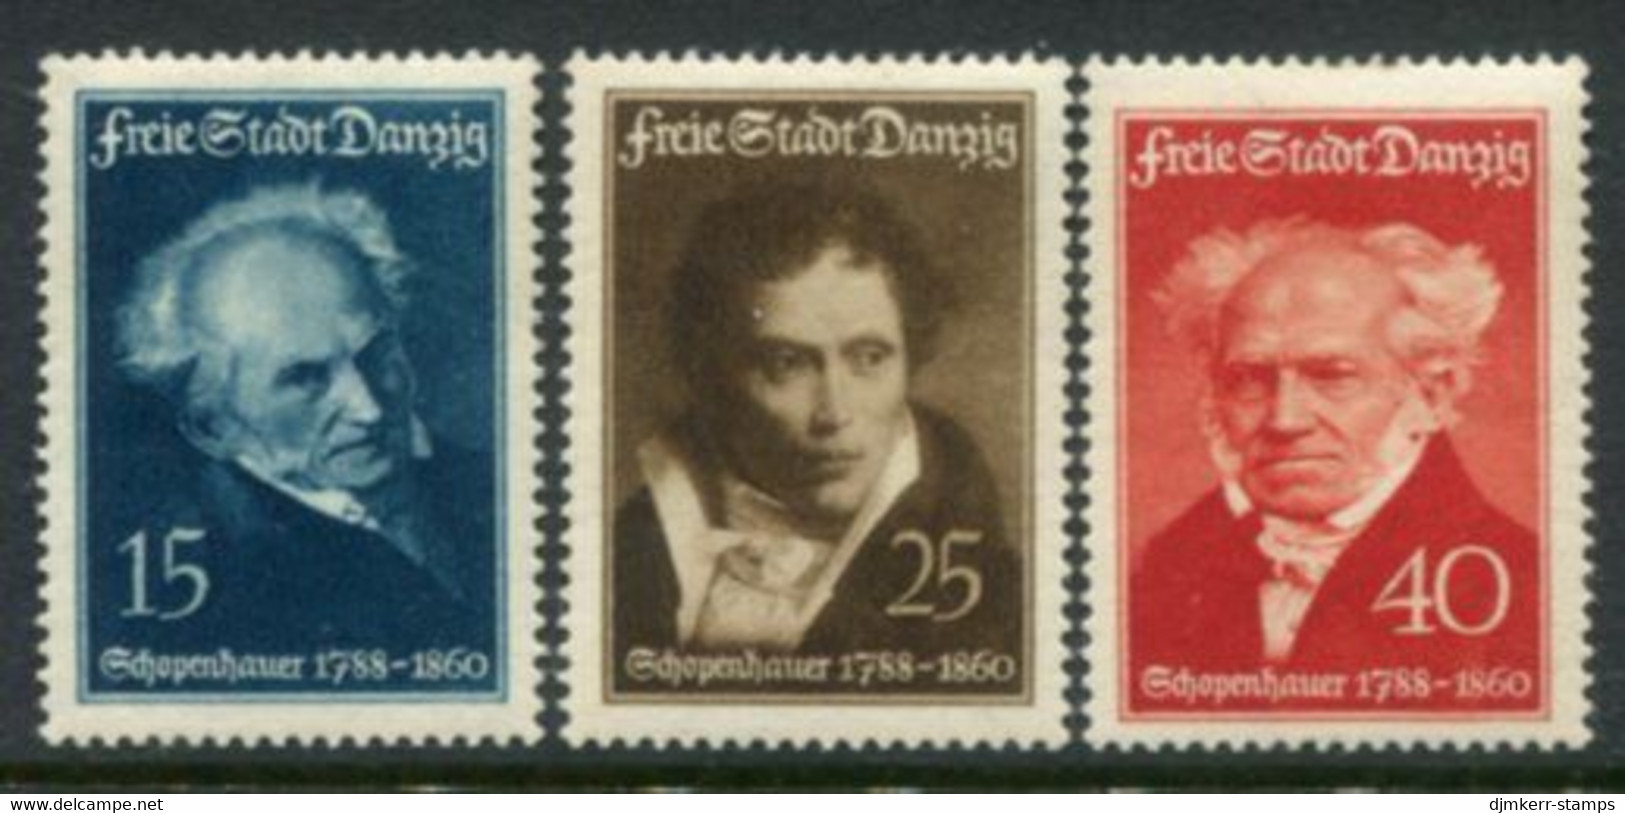 DANZIG 1938 Schopenhauer Birth Anniversary LHM / *  Michel 281-83 - Postfris